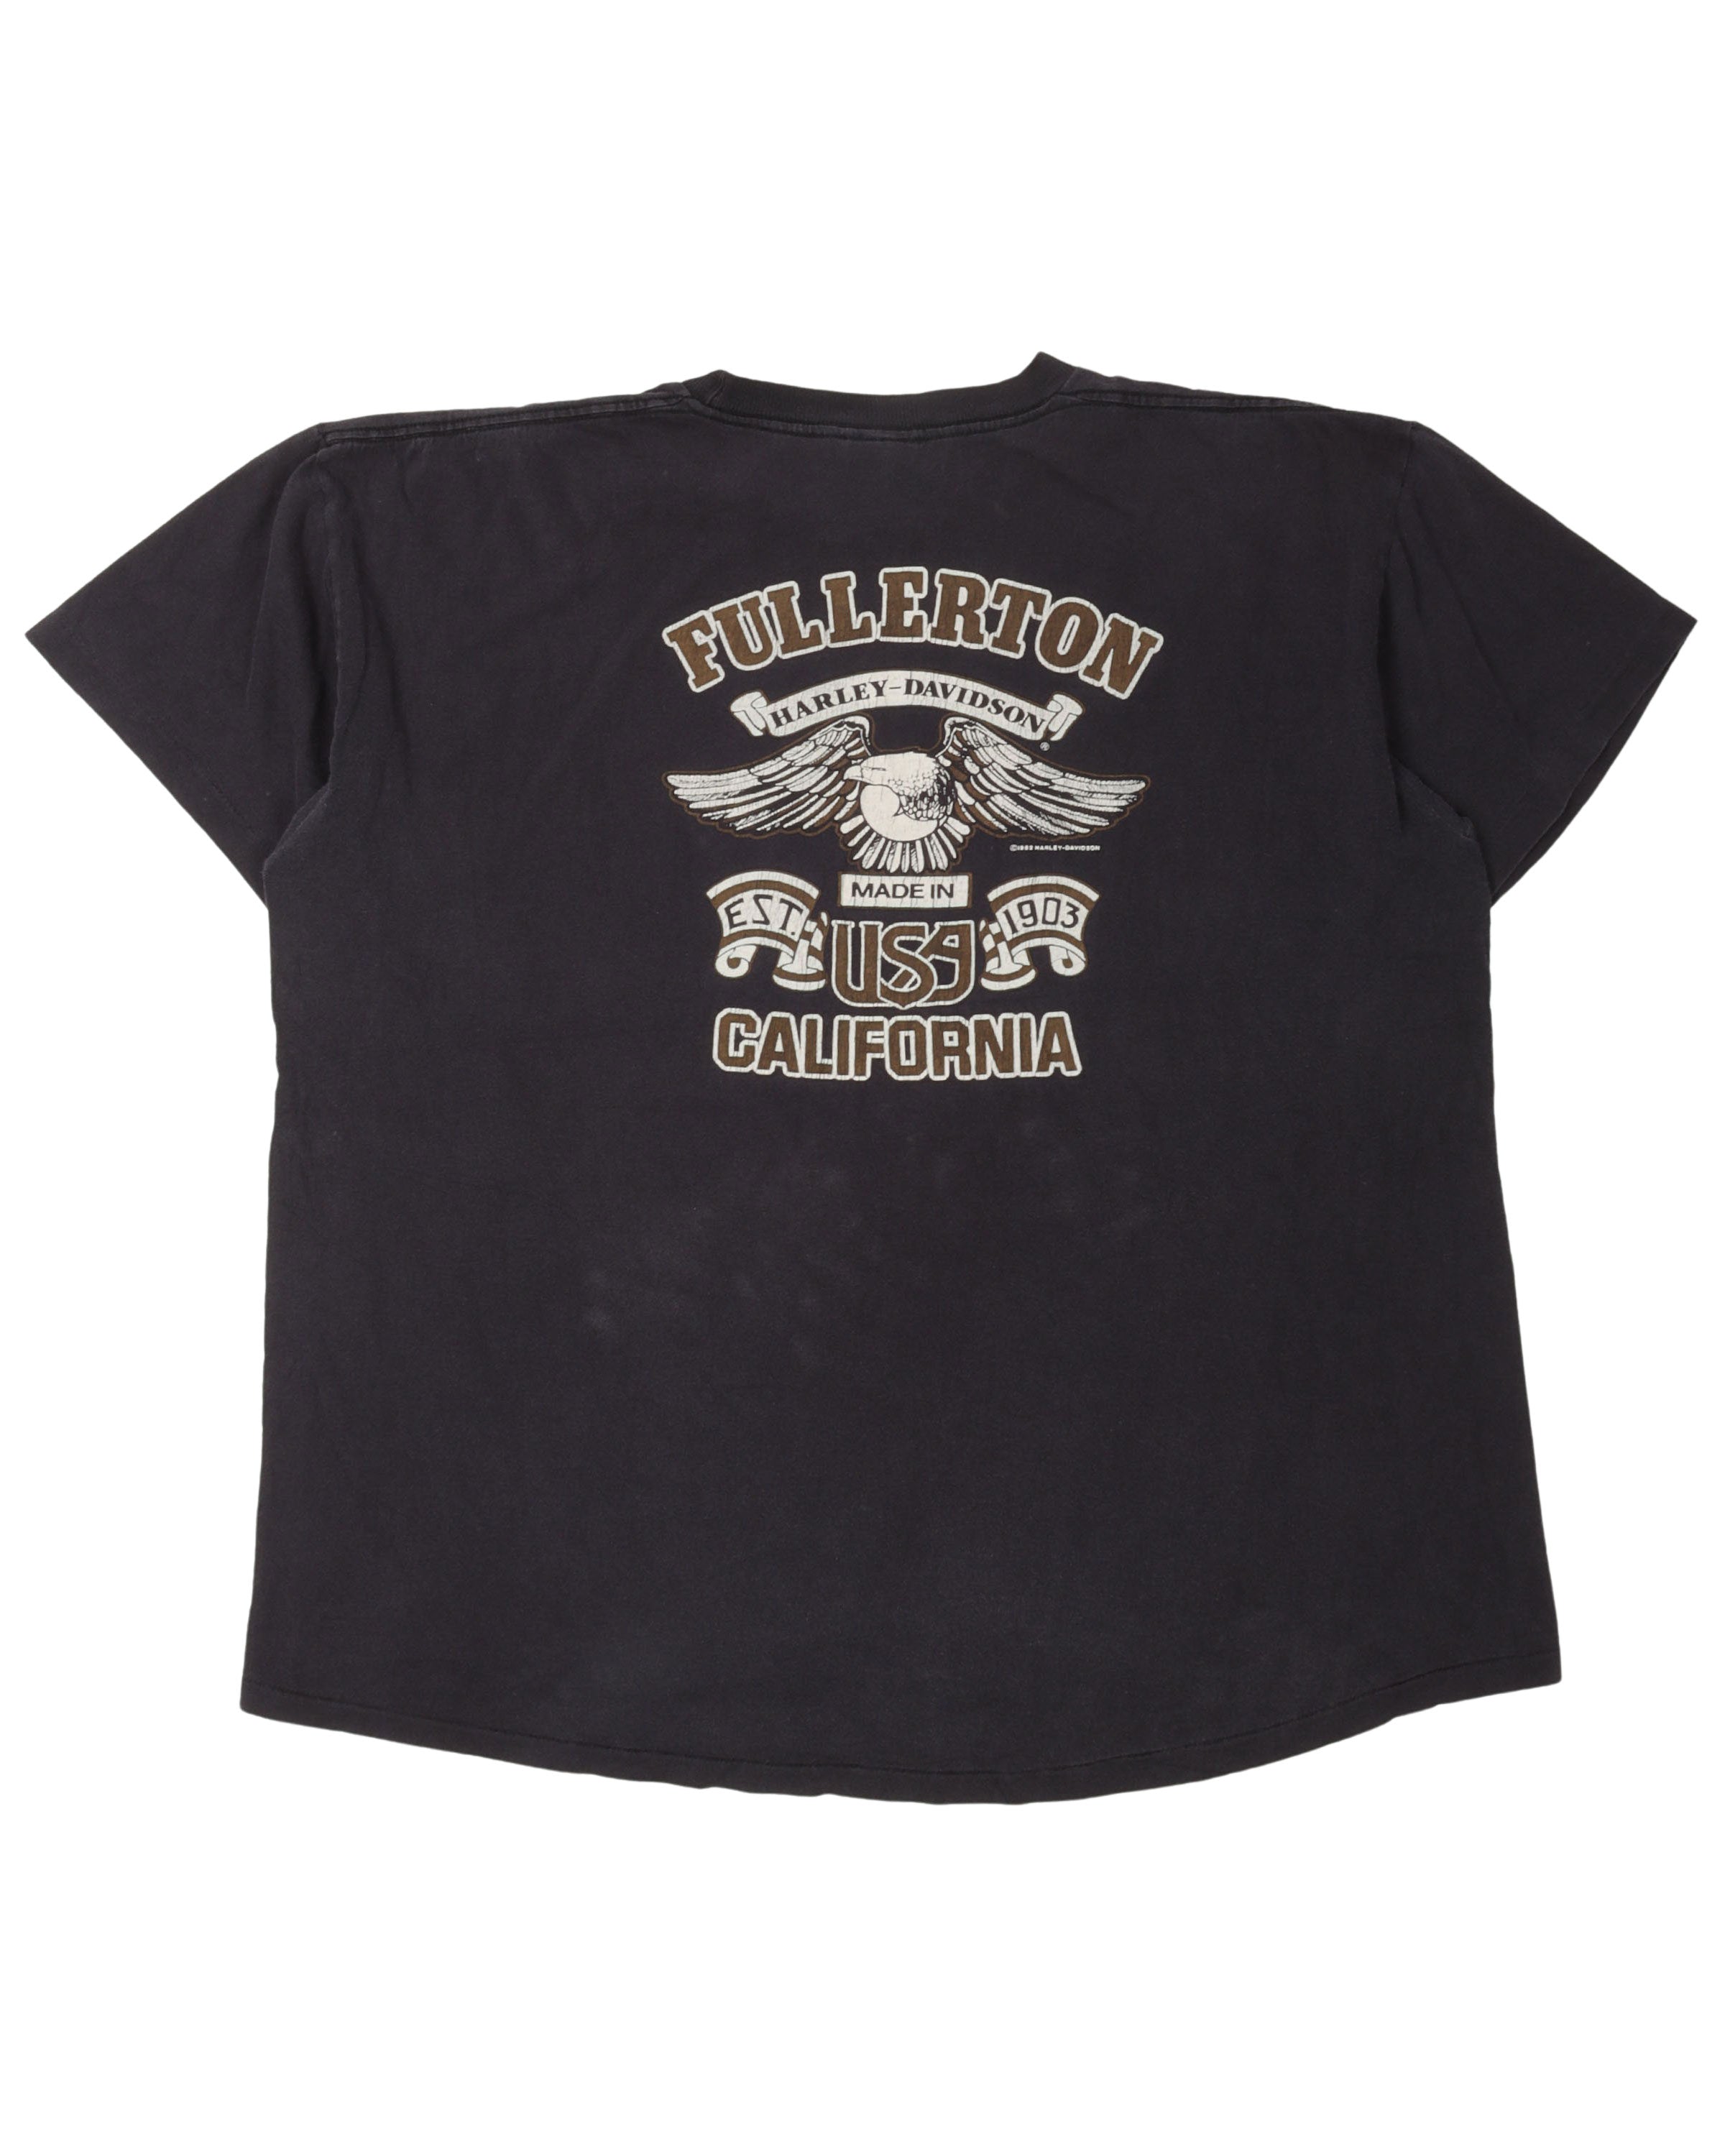 Harley Davidson Bike Boys T-Shirt